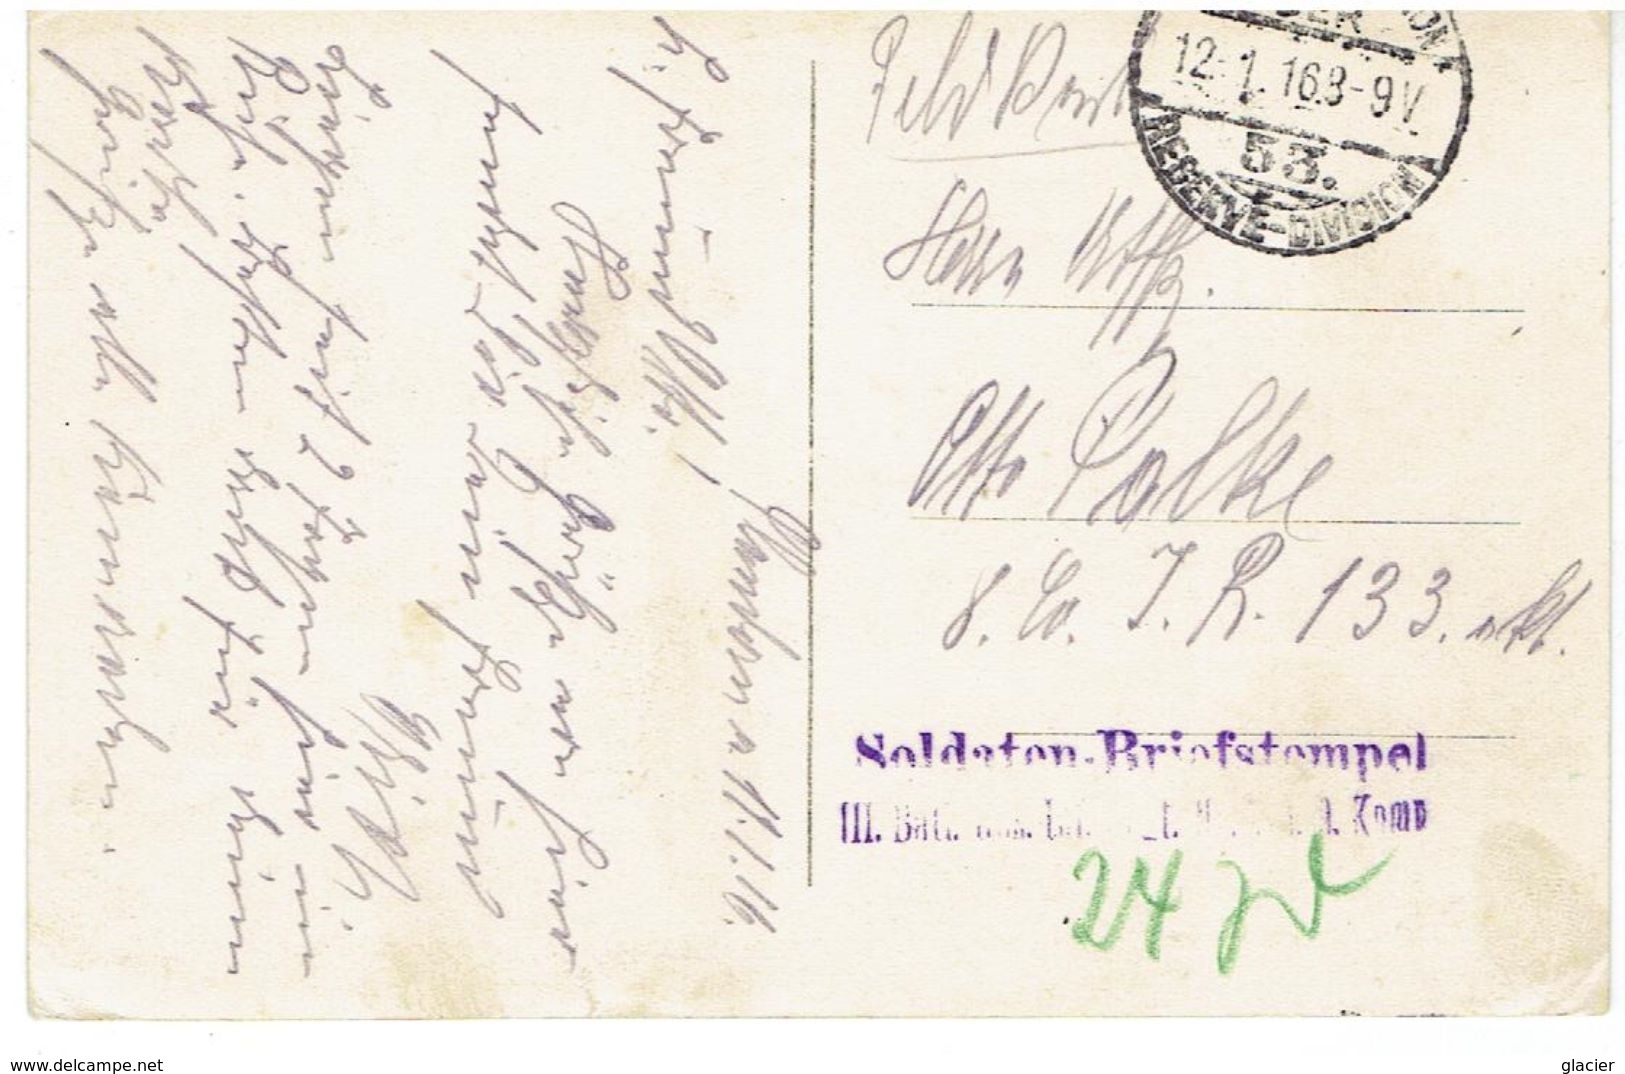 MEULEBEKE - Voorzicht Op Het Kasteel - 18710 Photo Sacrez - Feldpost - Soldaten Briefstempel - Meulebeke